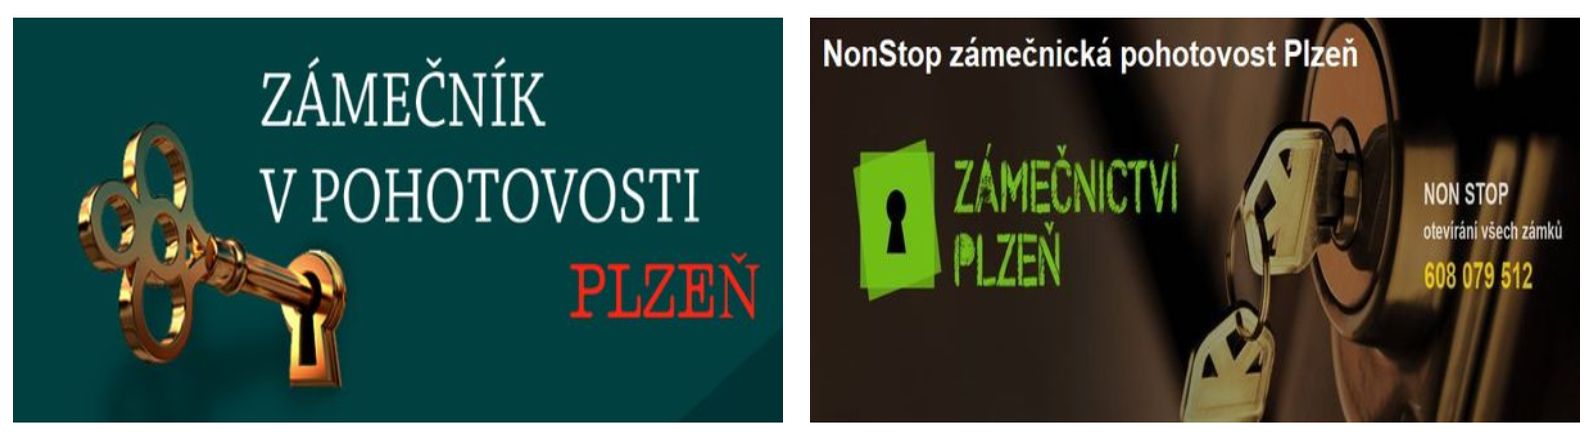 Zámečnictví – info – Plzeň – služby zámečnictví NonStop. Non Stop zámečnictví v Plzni.